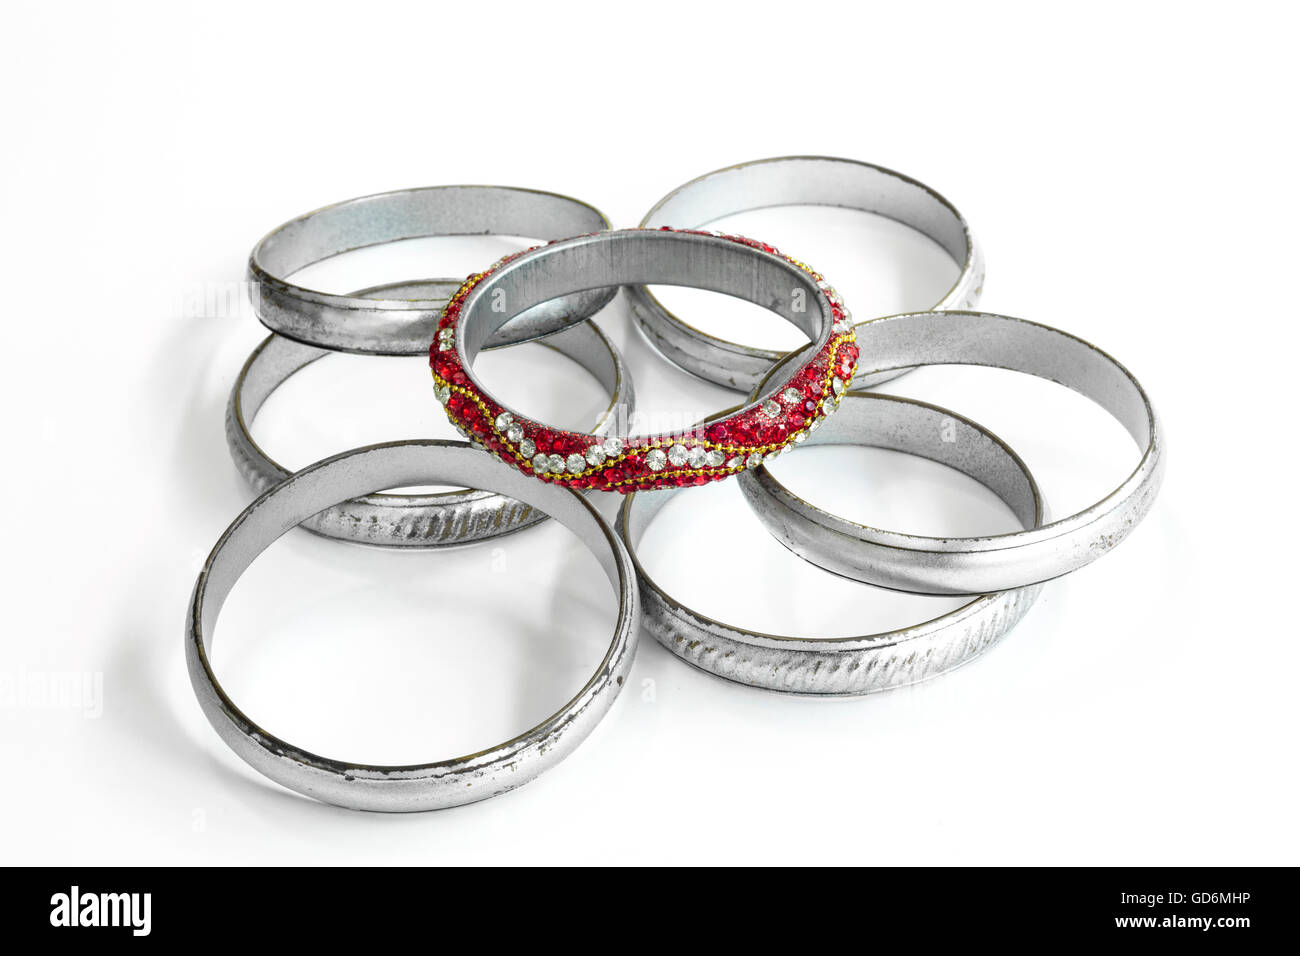 Groupe des bracelets en argent et un très différents l'un composé de couleurs rouges et de gemmes, contrastant avec les autres Banque D'Images